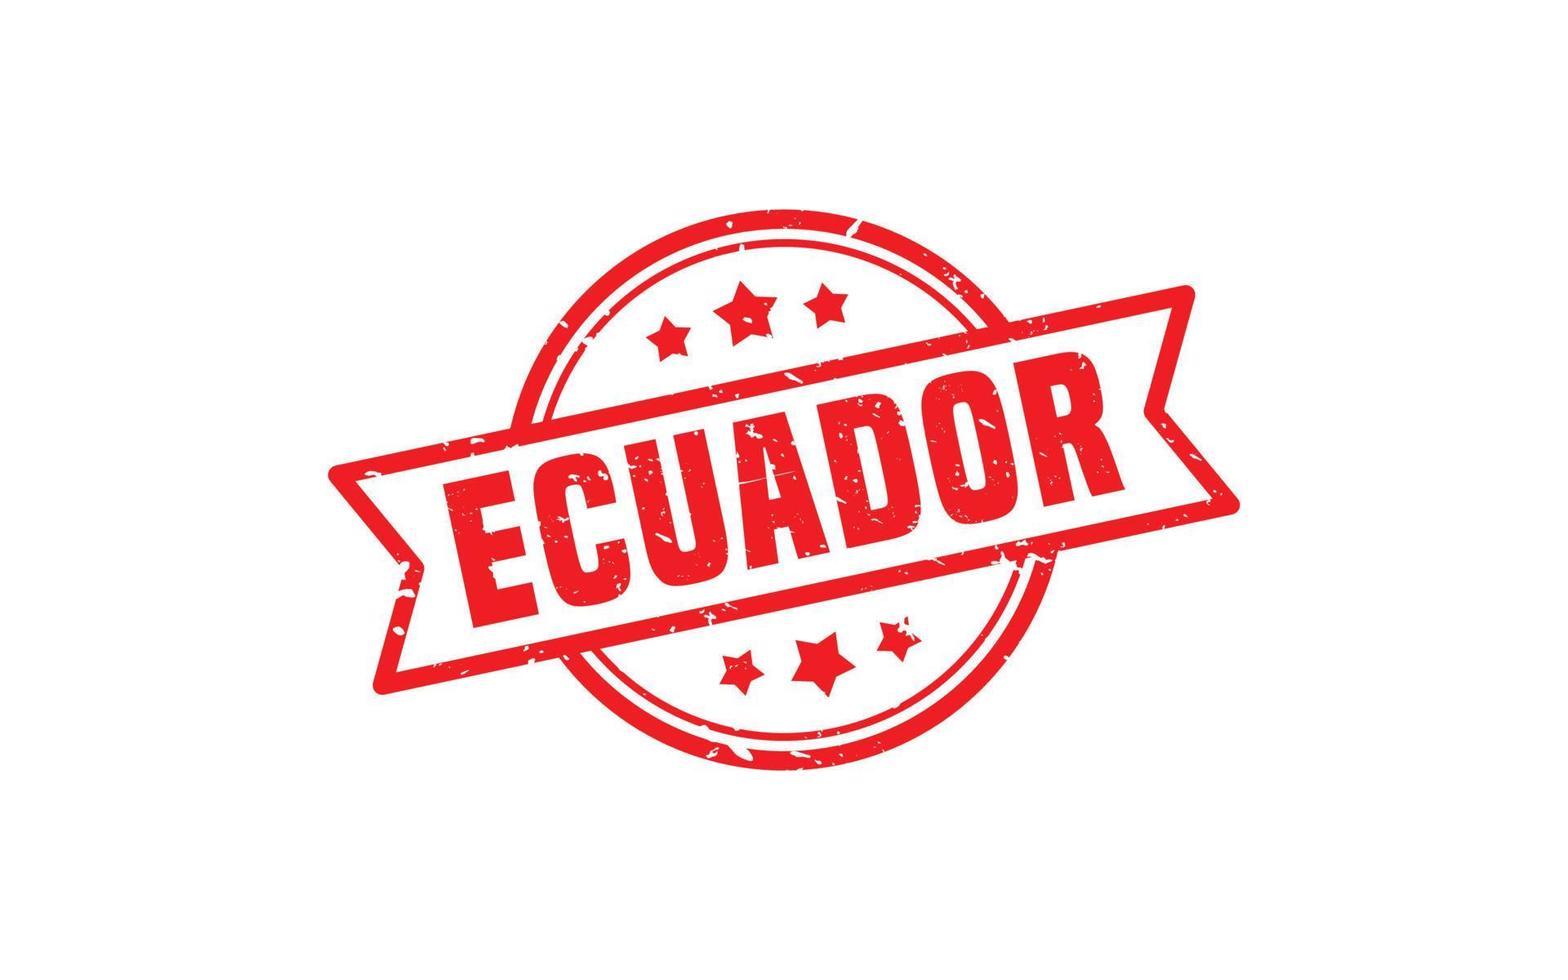 Ecuador-Stempelgummi mit Grunge-Stil auf weißem Hintergrund vektor